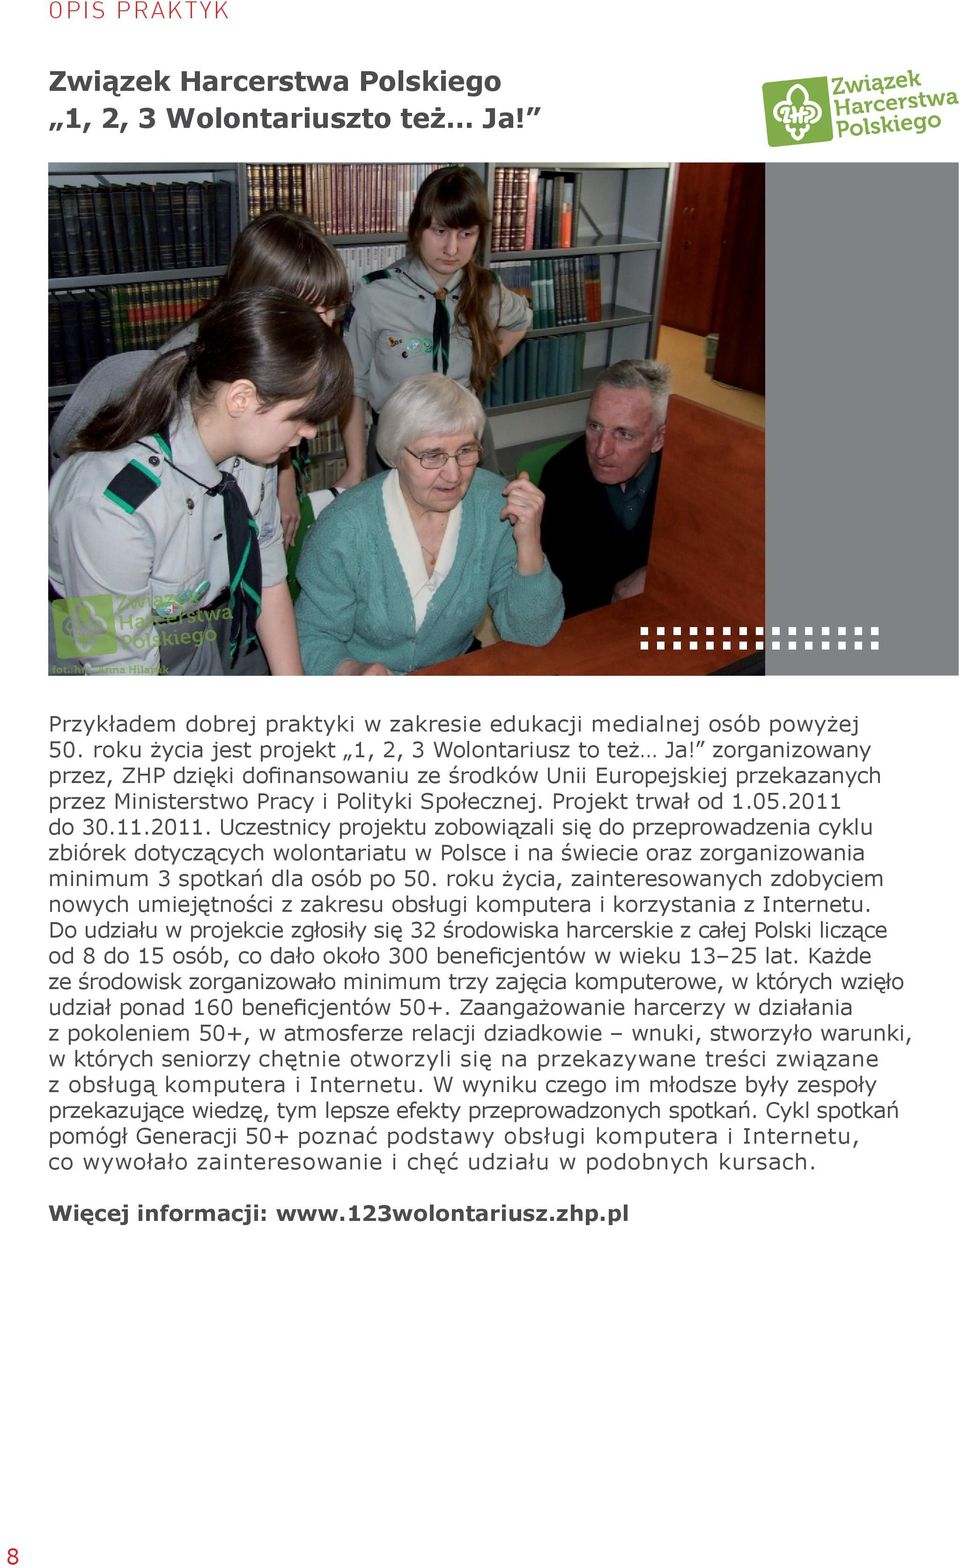 Projekt trwał od 1.05.2011 do 30.11.2011. Uczestnicy projektu zobowiązali się do przeprowadzenia cyklu zbiórek dotyczących wolontariatu w Polsce i na świecie oraz zorganizowania minimum 3 spotkań dla osób po 50.